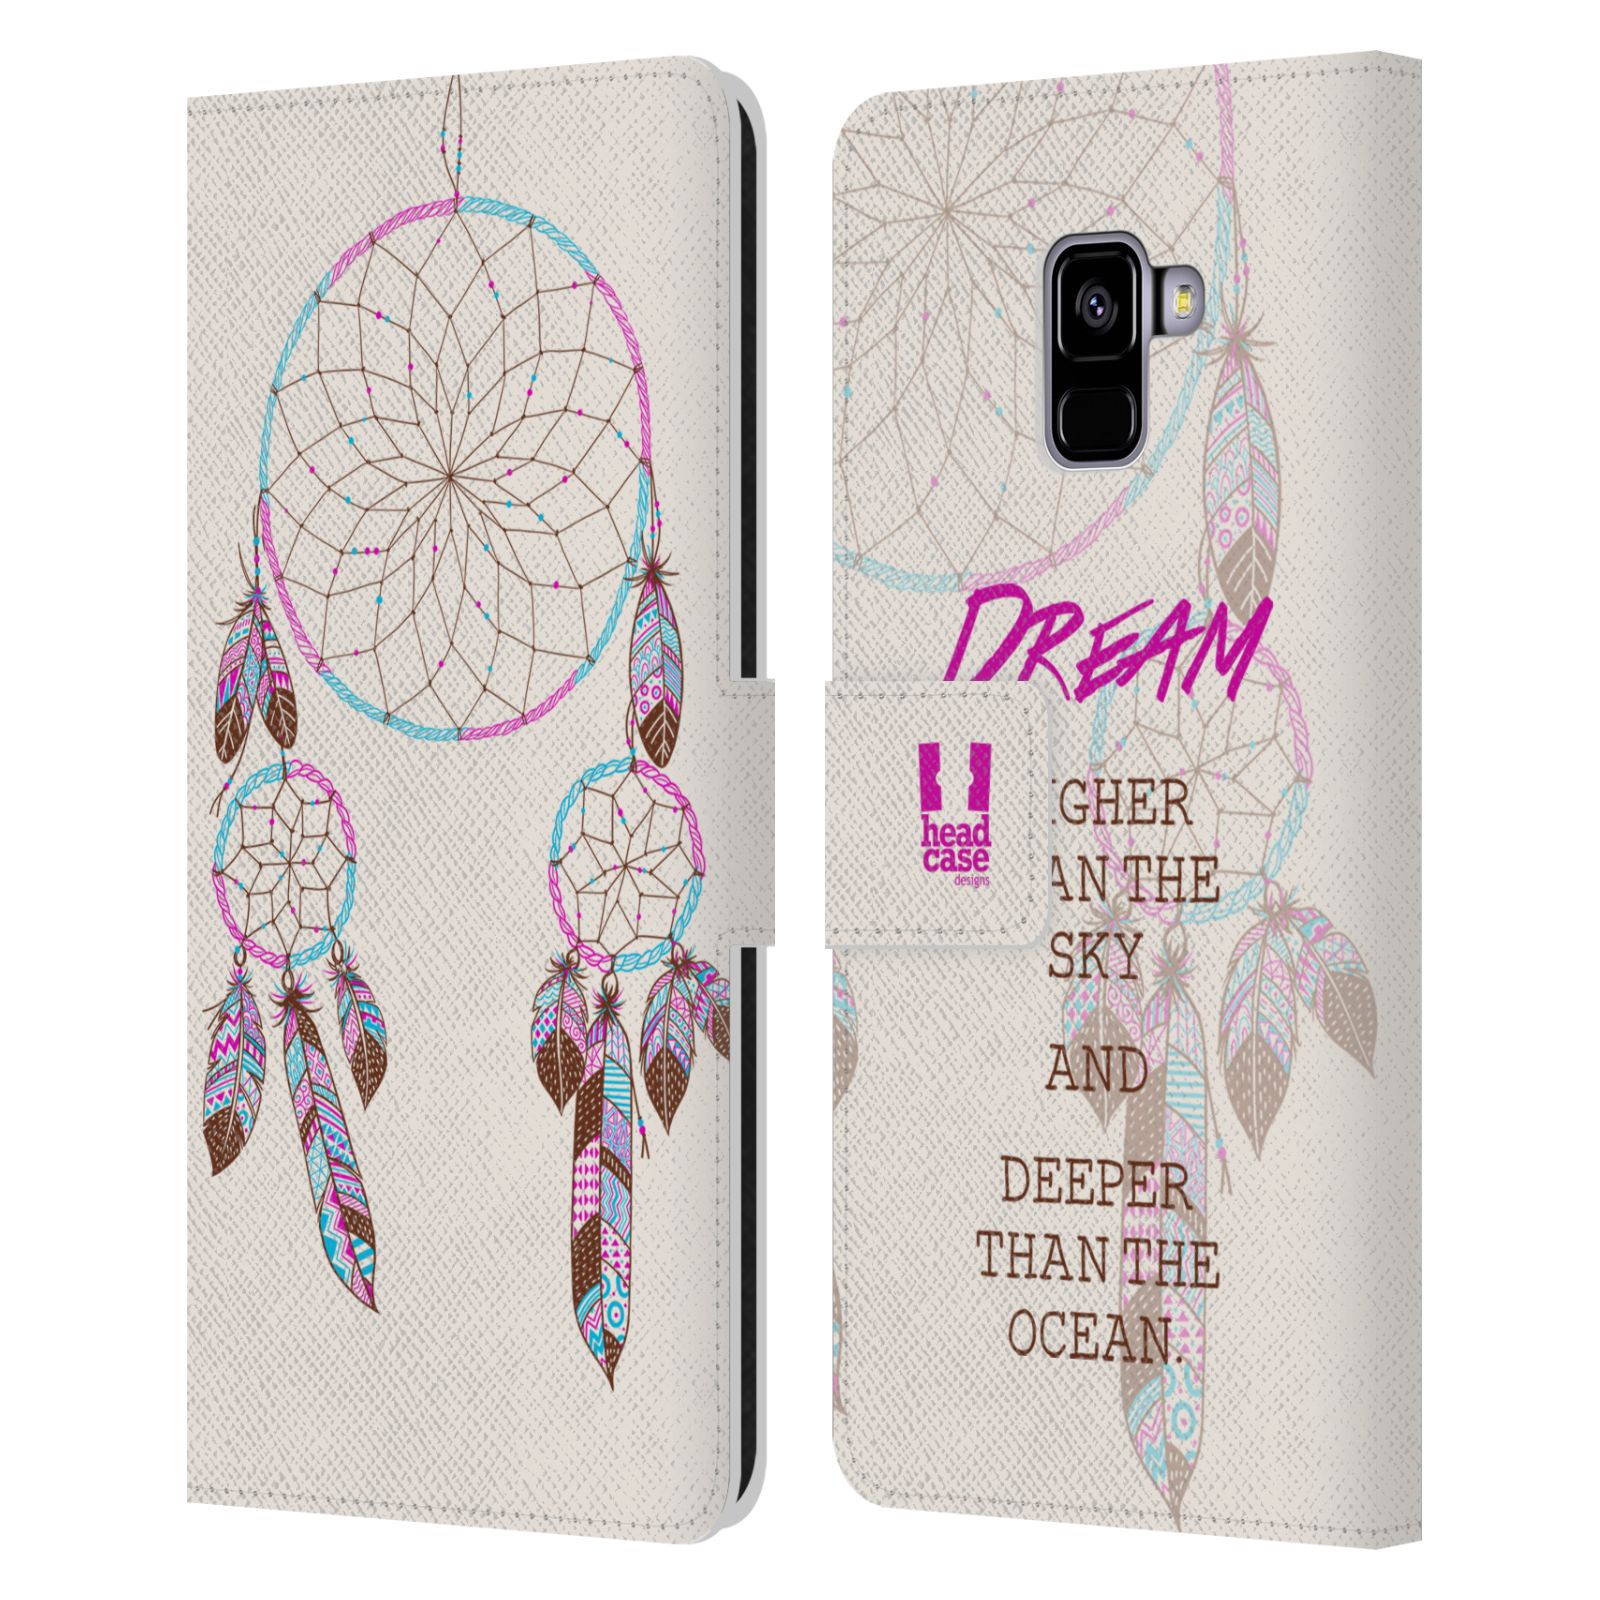 Pouzdro na mobil Samsung Galaxy A8 PLUS 2018 - Head Case - Lapač snů fialová dream